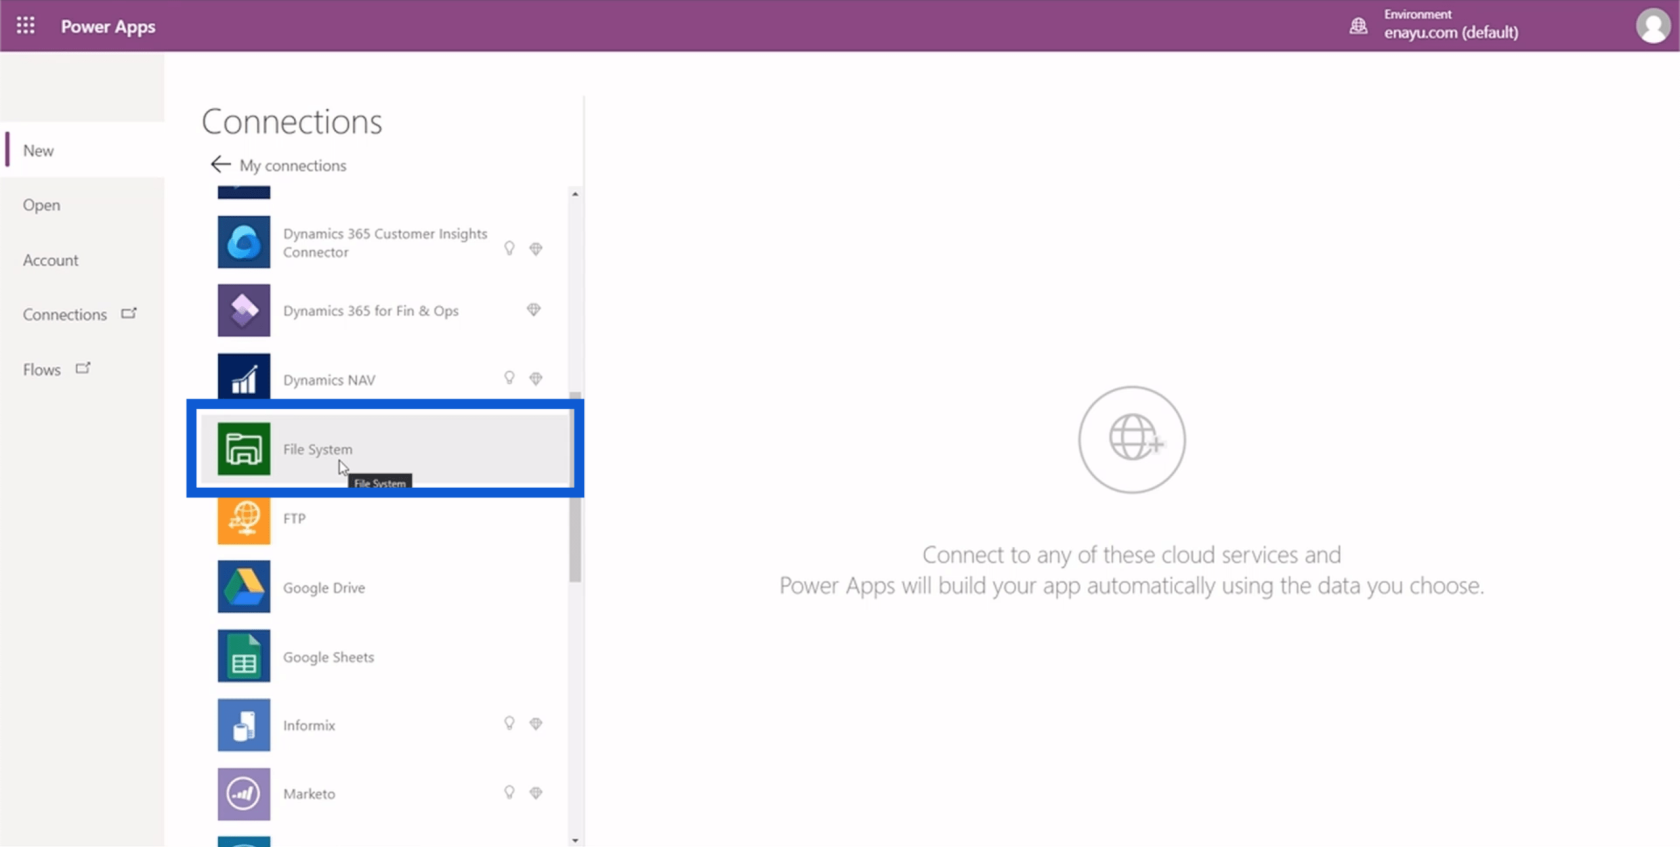 Configuração do ambiente do Power Apps: conectar-se ao OneDrive e ao Google Drive